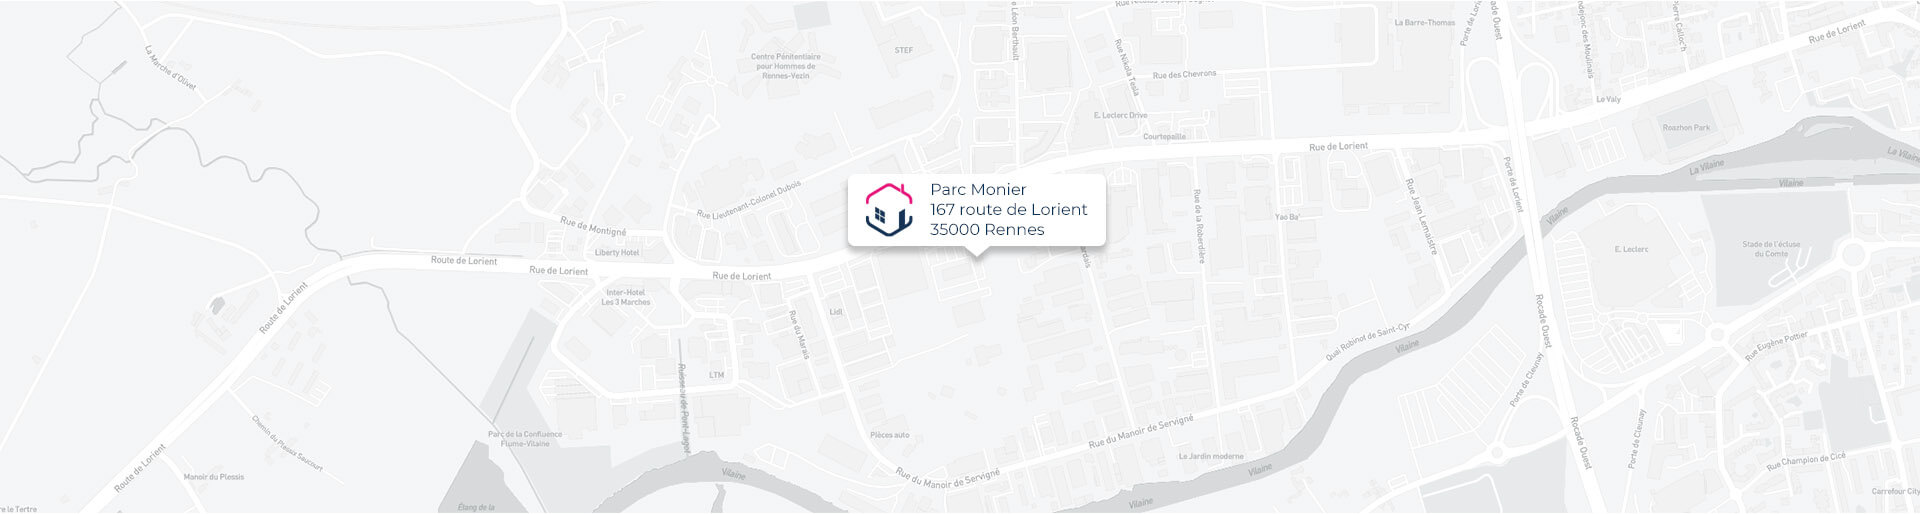 Plan de l'agence de Rennes IMMO9 située Parc Monier 167, route de Lorient 35000 Rennes tel: 02 30 96 48 60